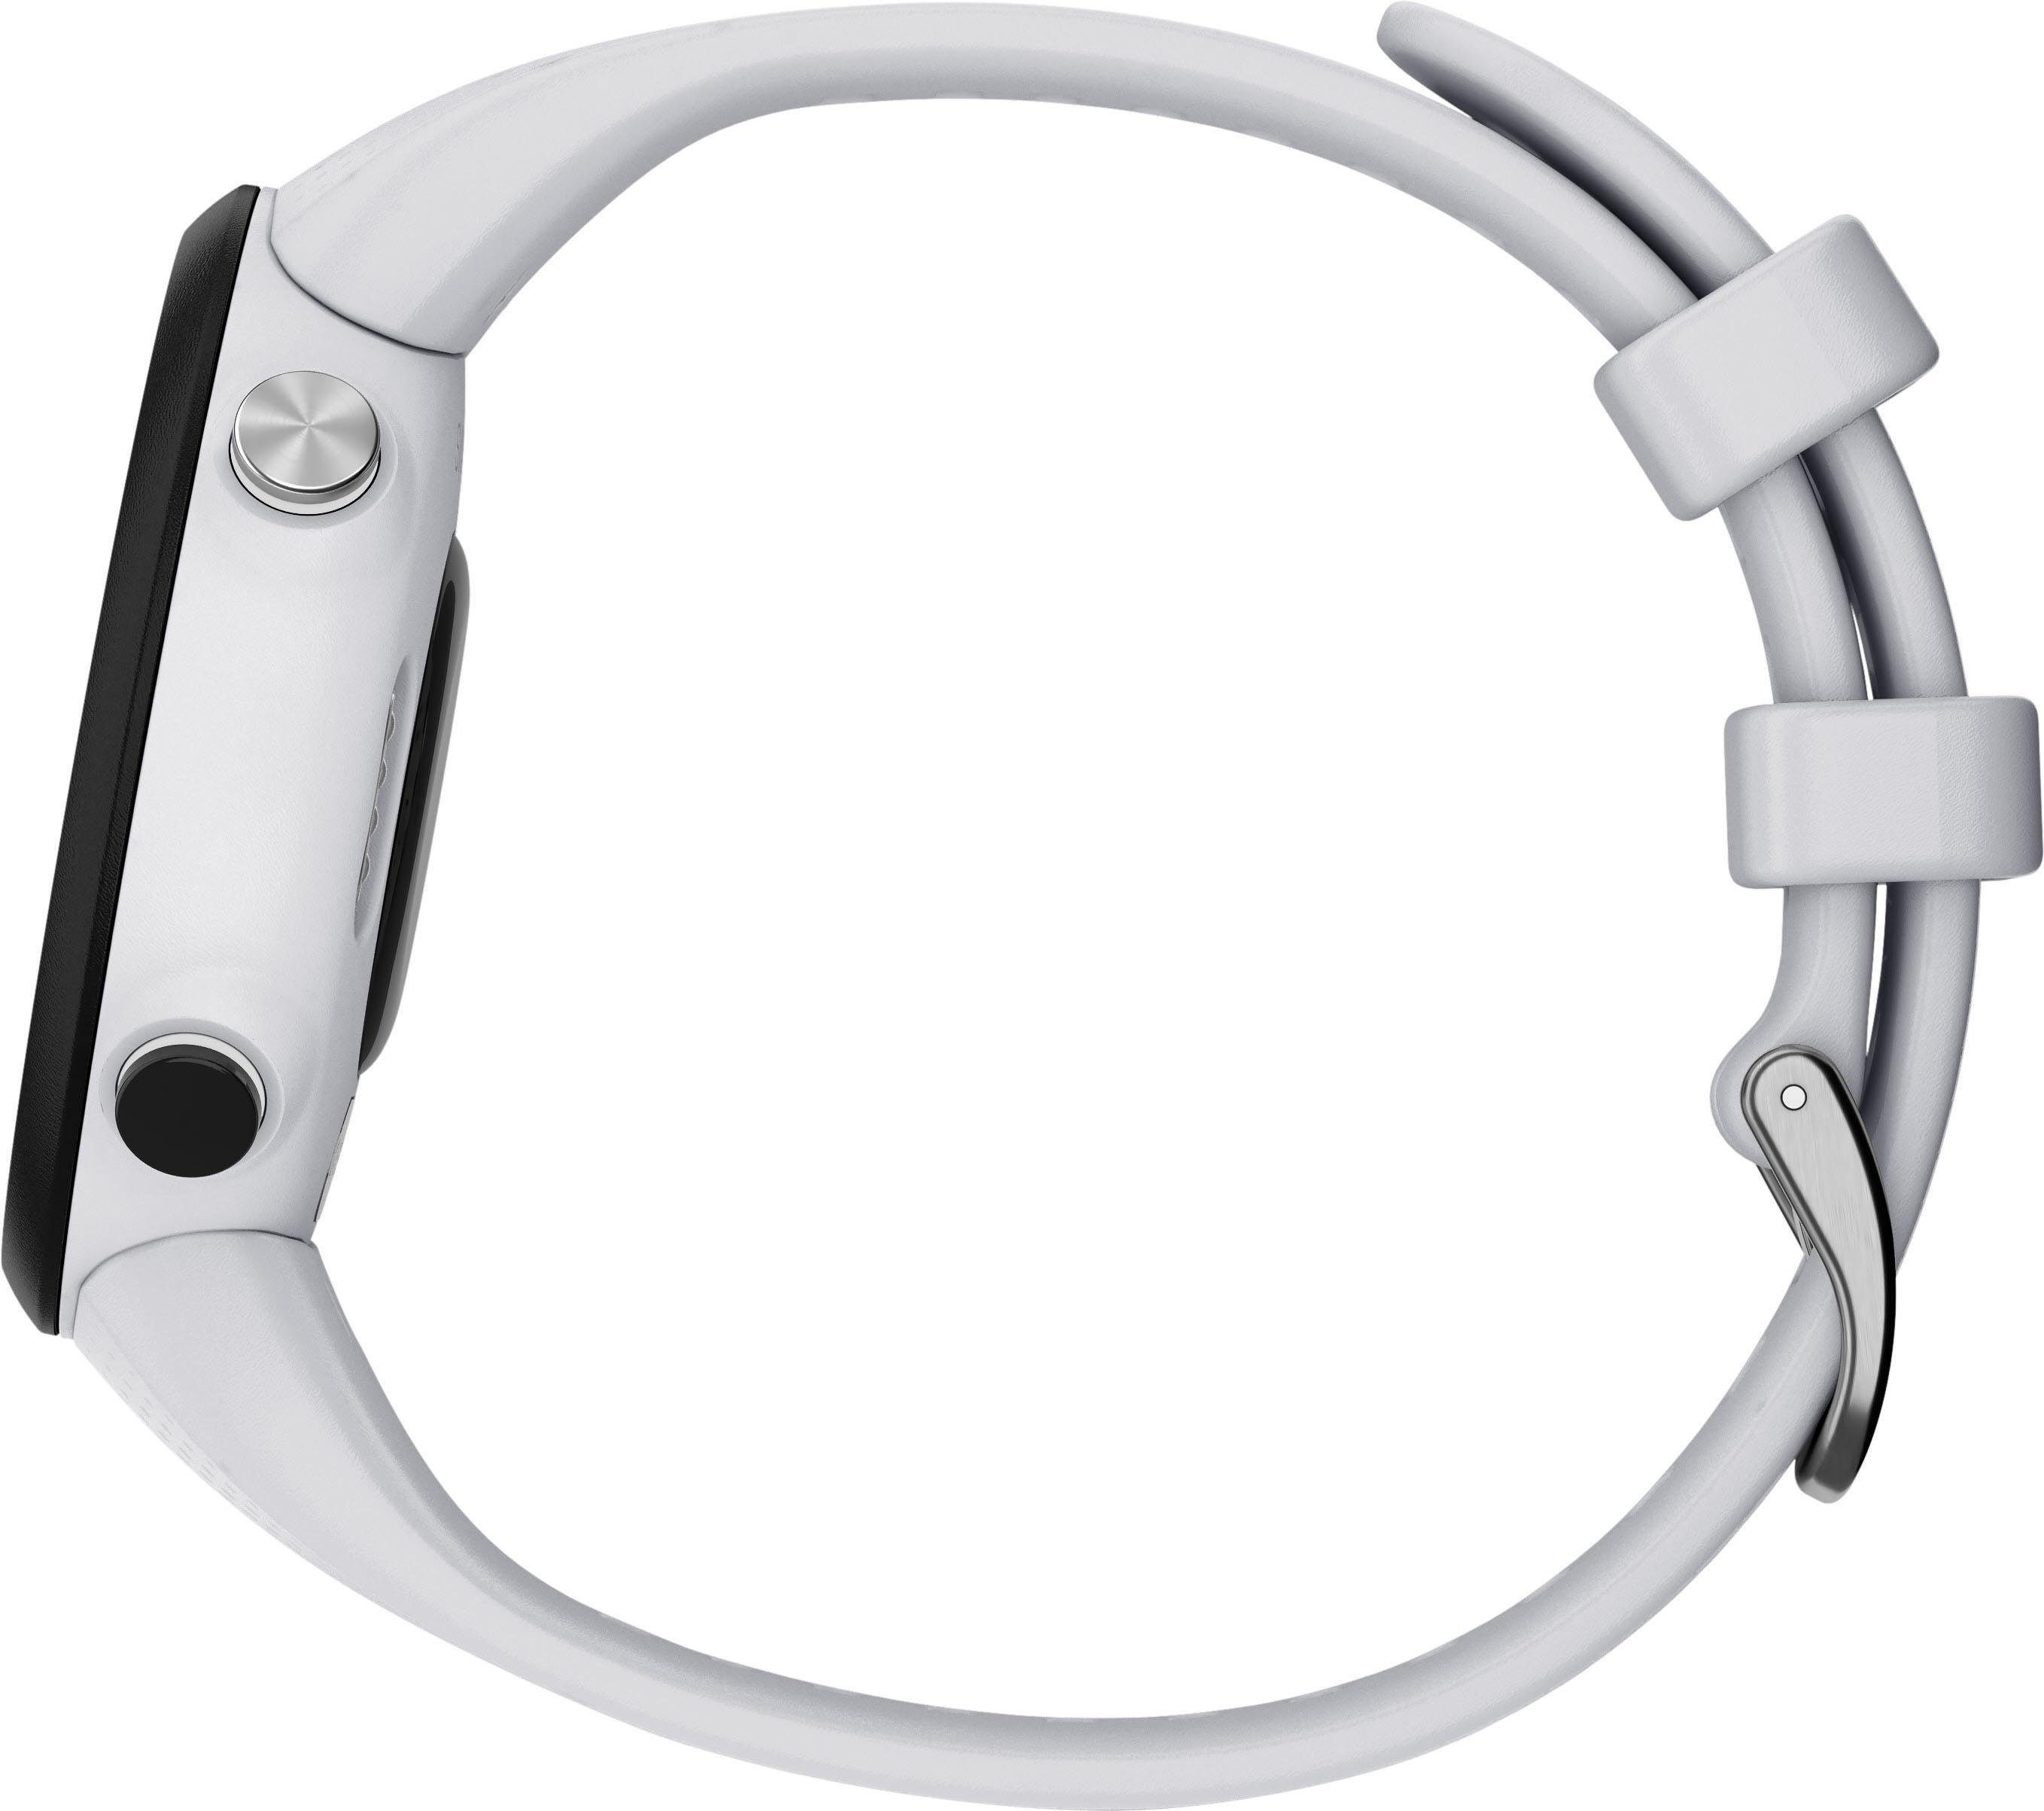 Garmin Swim2 mit Silikon-Armband 20 weiß cm/1,04 mm Zoll) Smartwatch (2,63